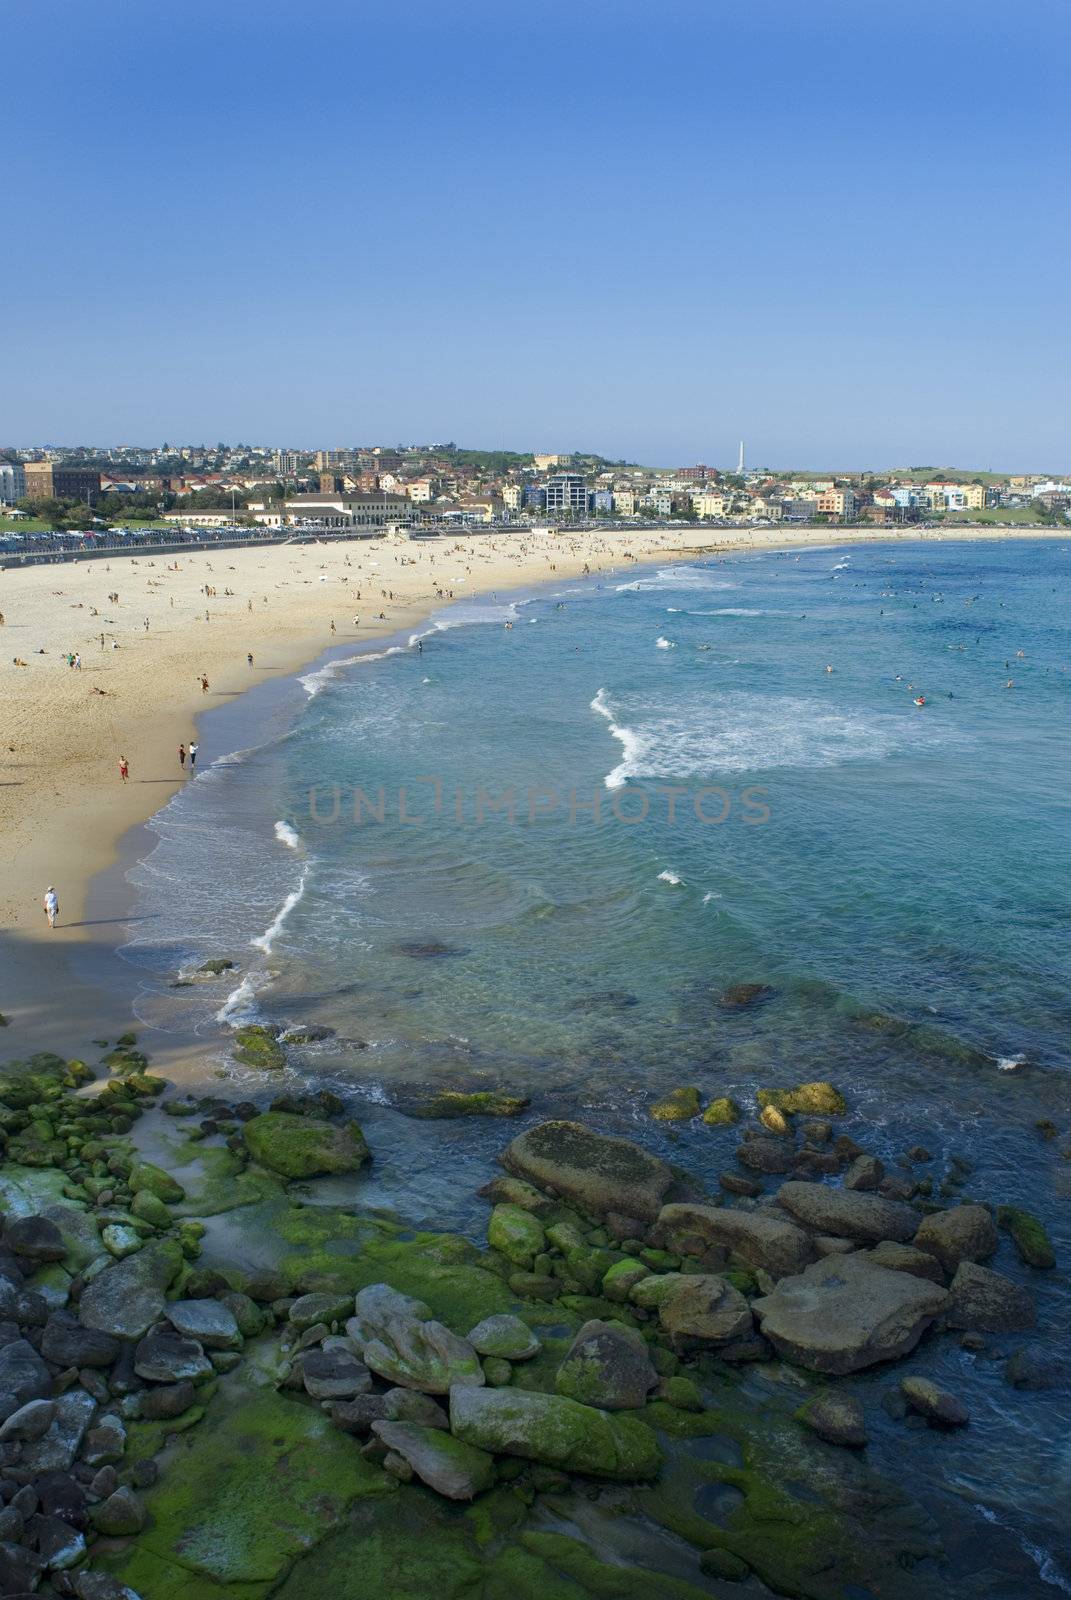 Sydney's famous Bondi beach